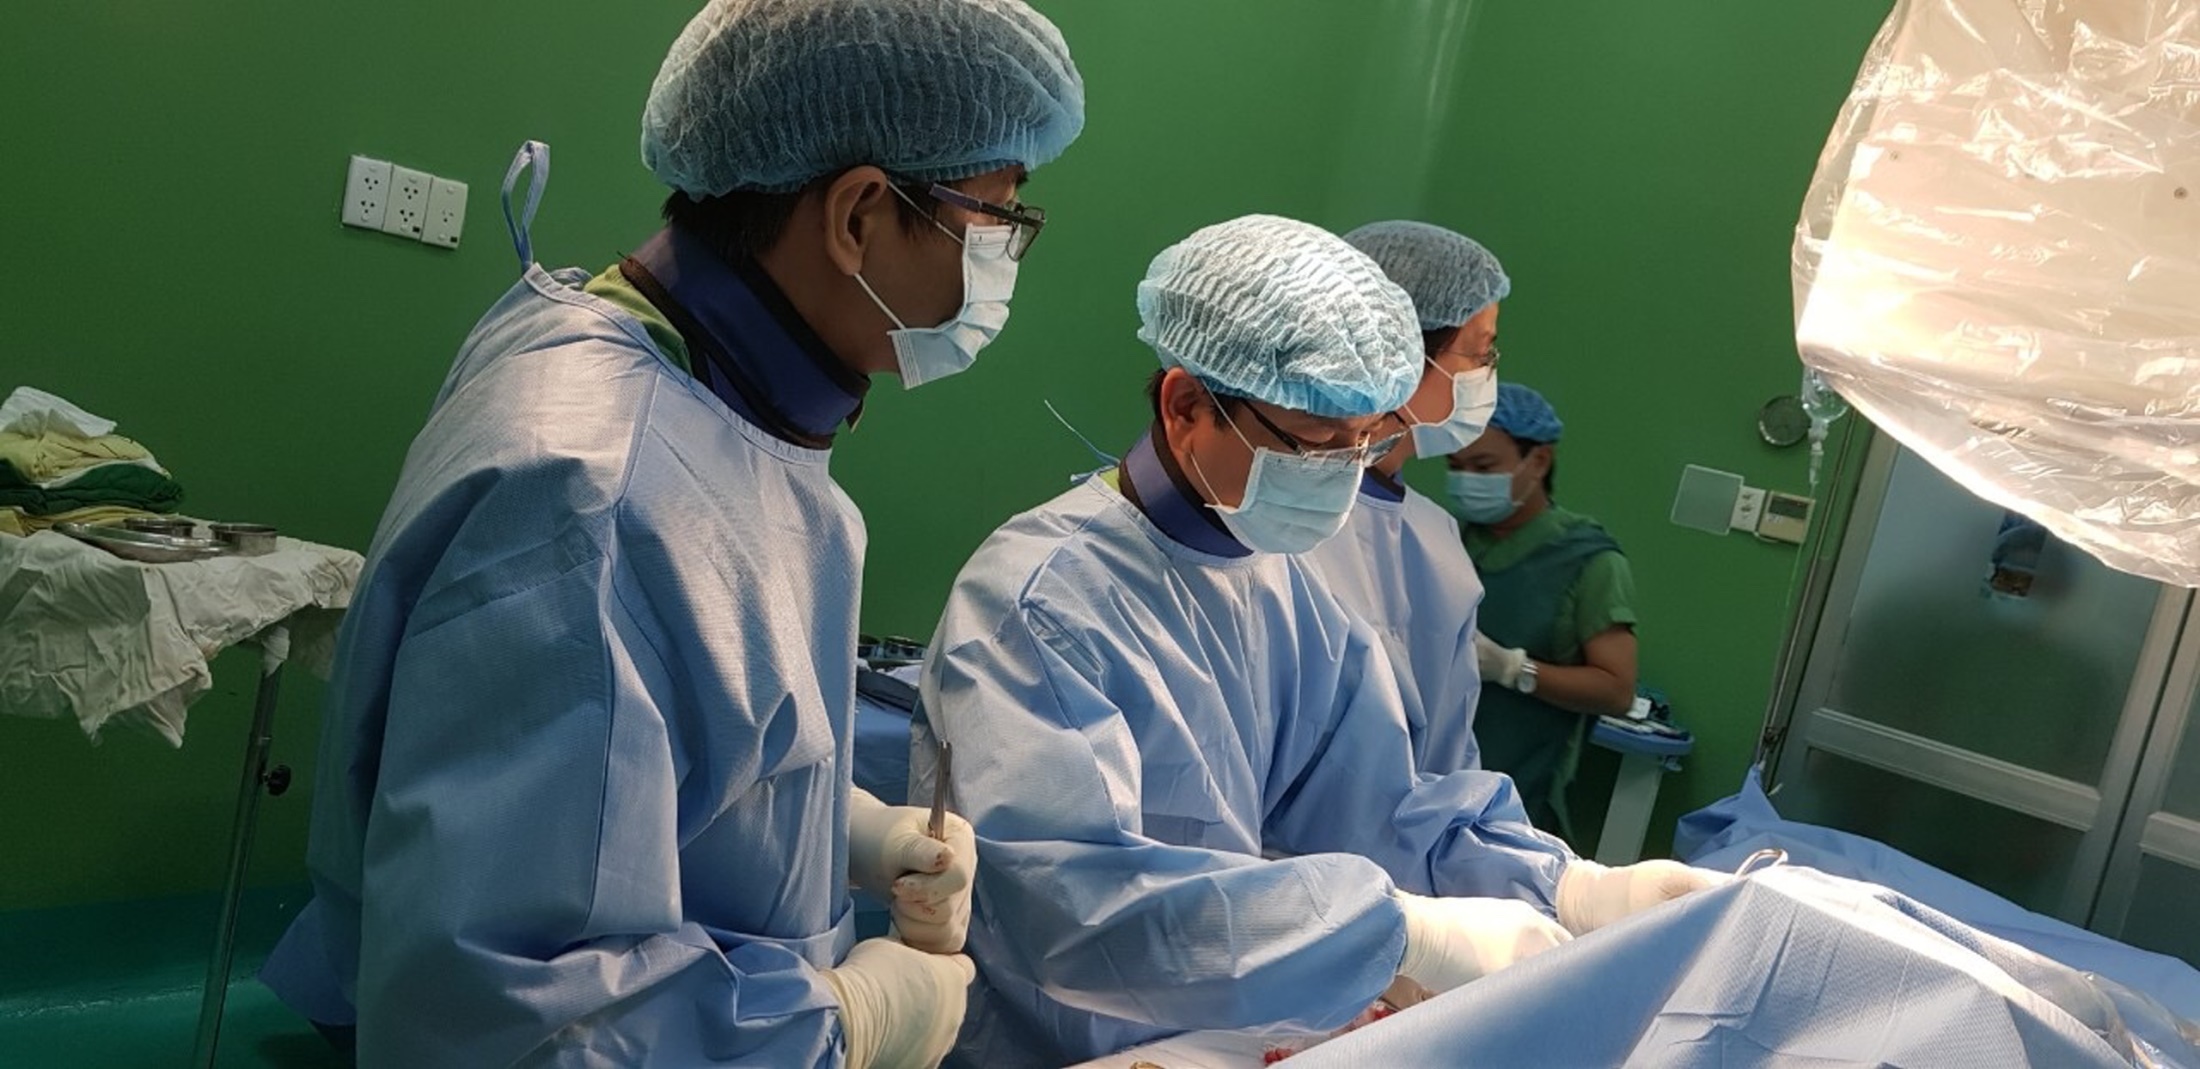 Phát triển khoa học và công nghệ-giải pháp mũi nhọn xây dựng thương hiệu Bệnh viện Nguyễn Đình Chiểu